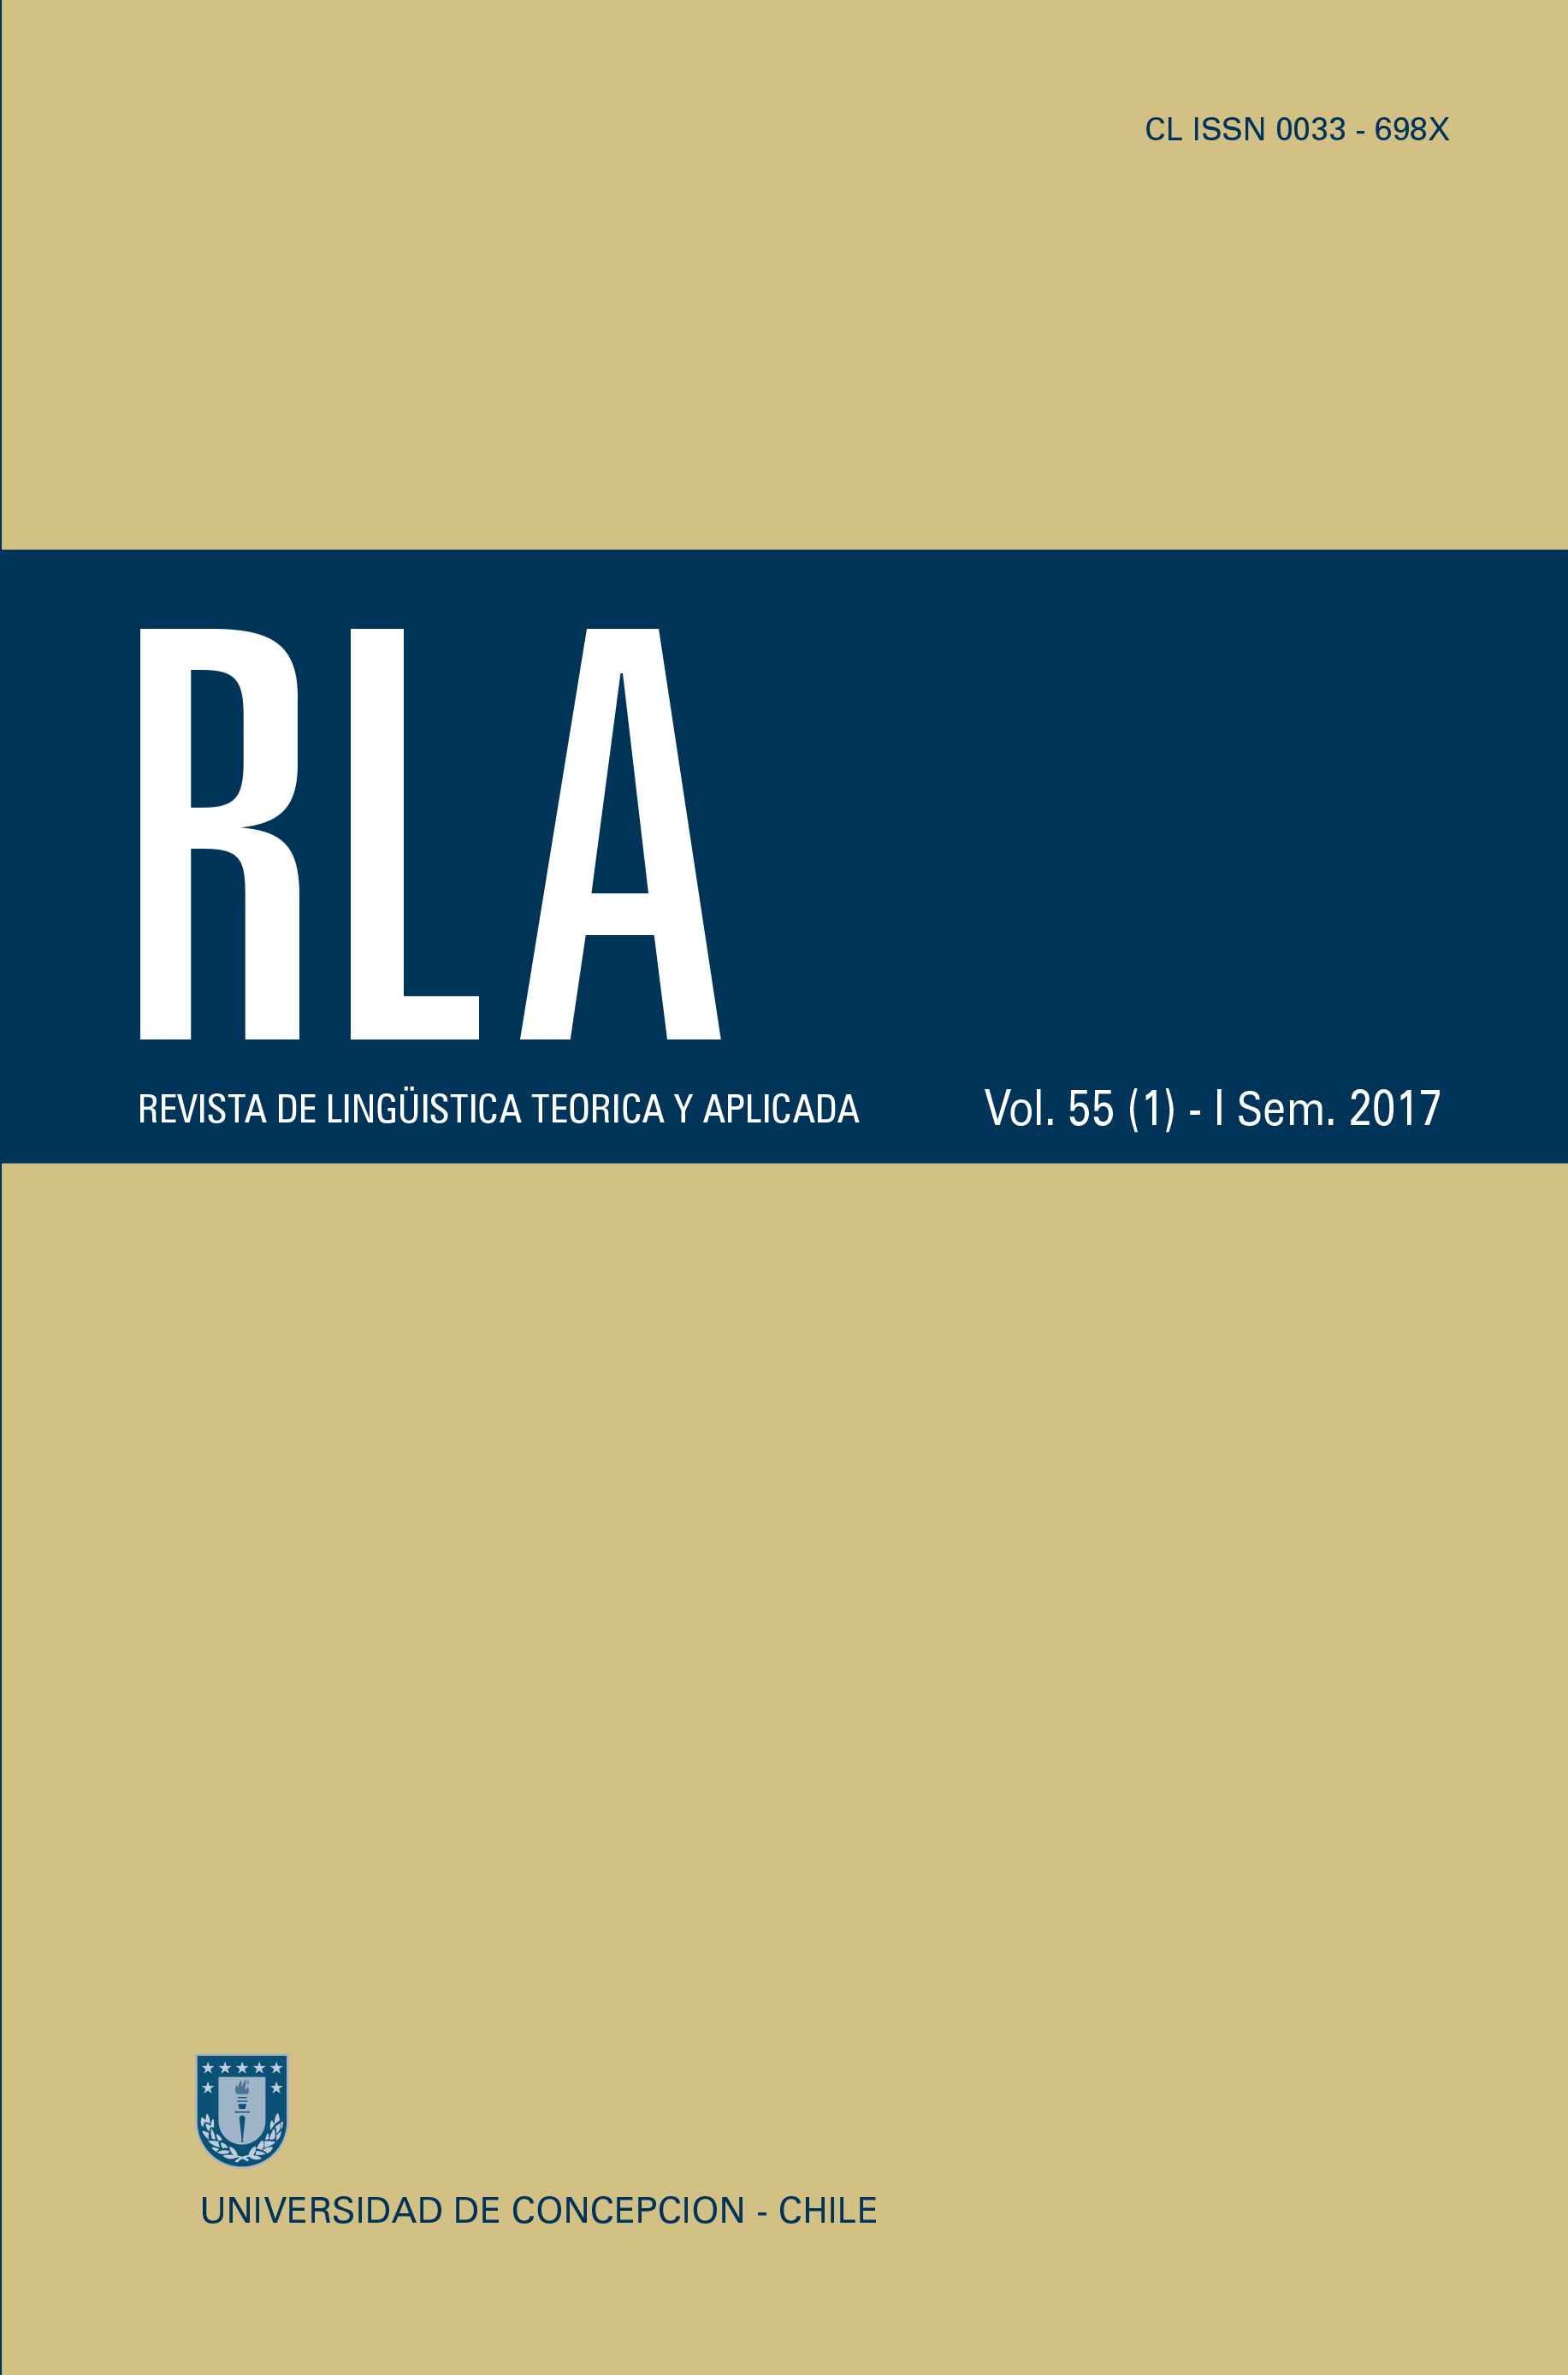 Revista de Linguística Teórica y Aplicada Vol. 56 N°1 (2017)